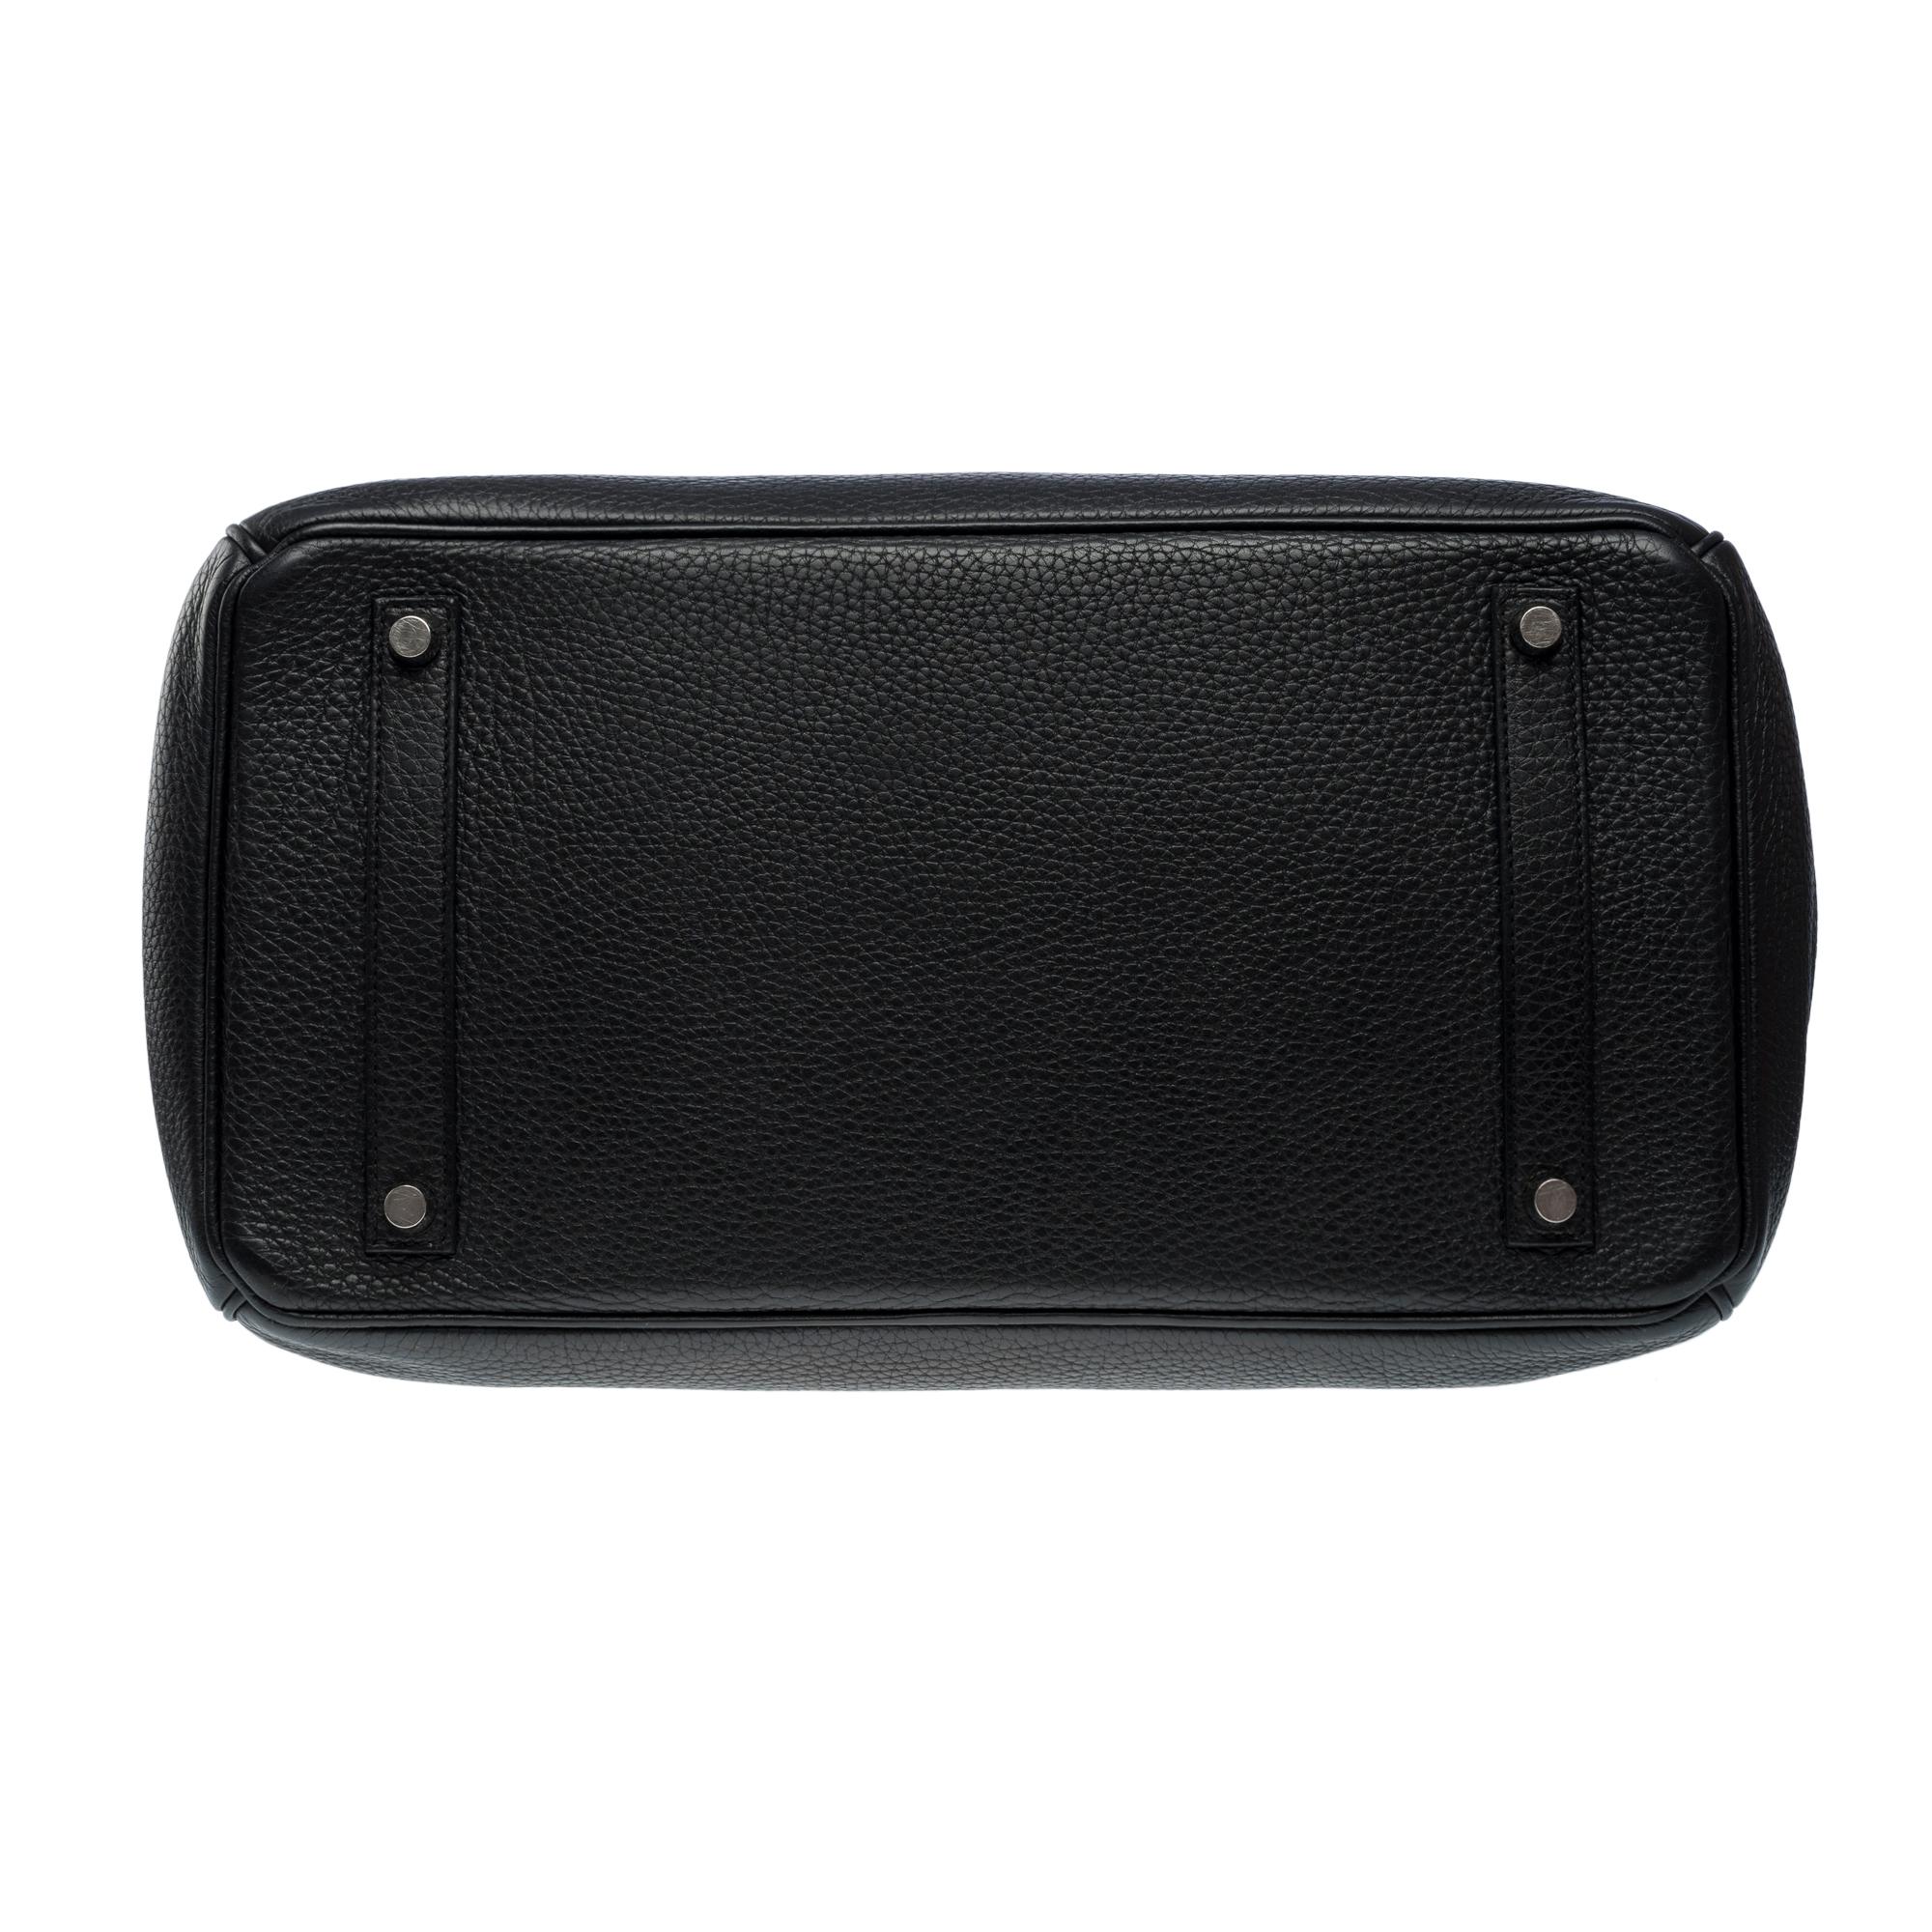 Stunning Hermes Birkin 30 handbag in Black Togo leather, SHW For Sale 7